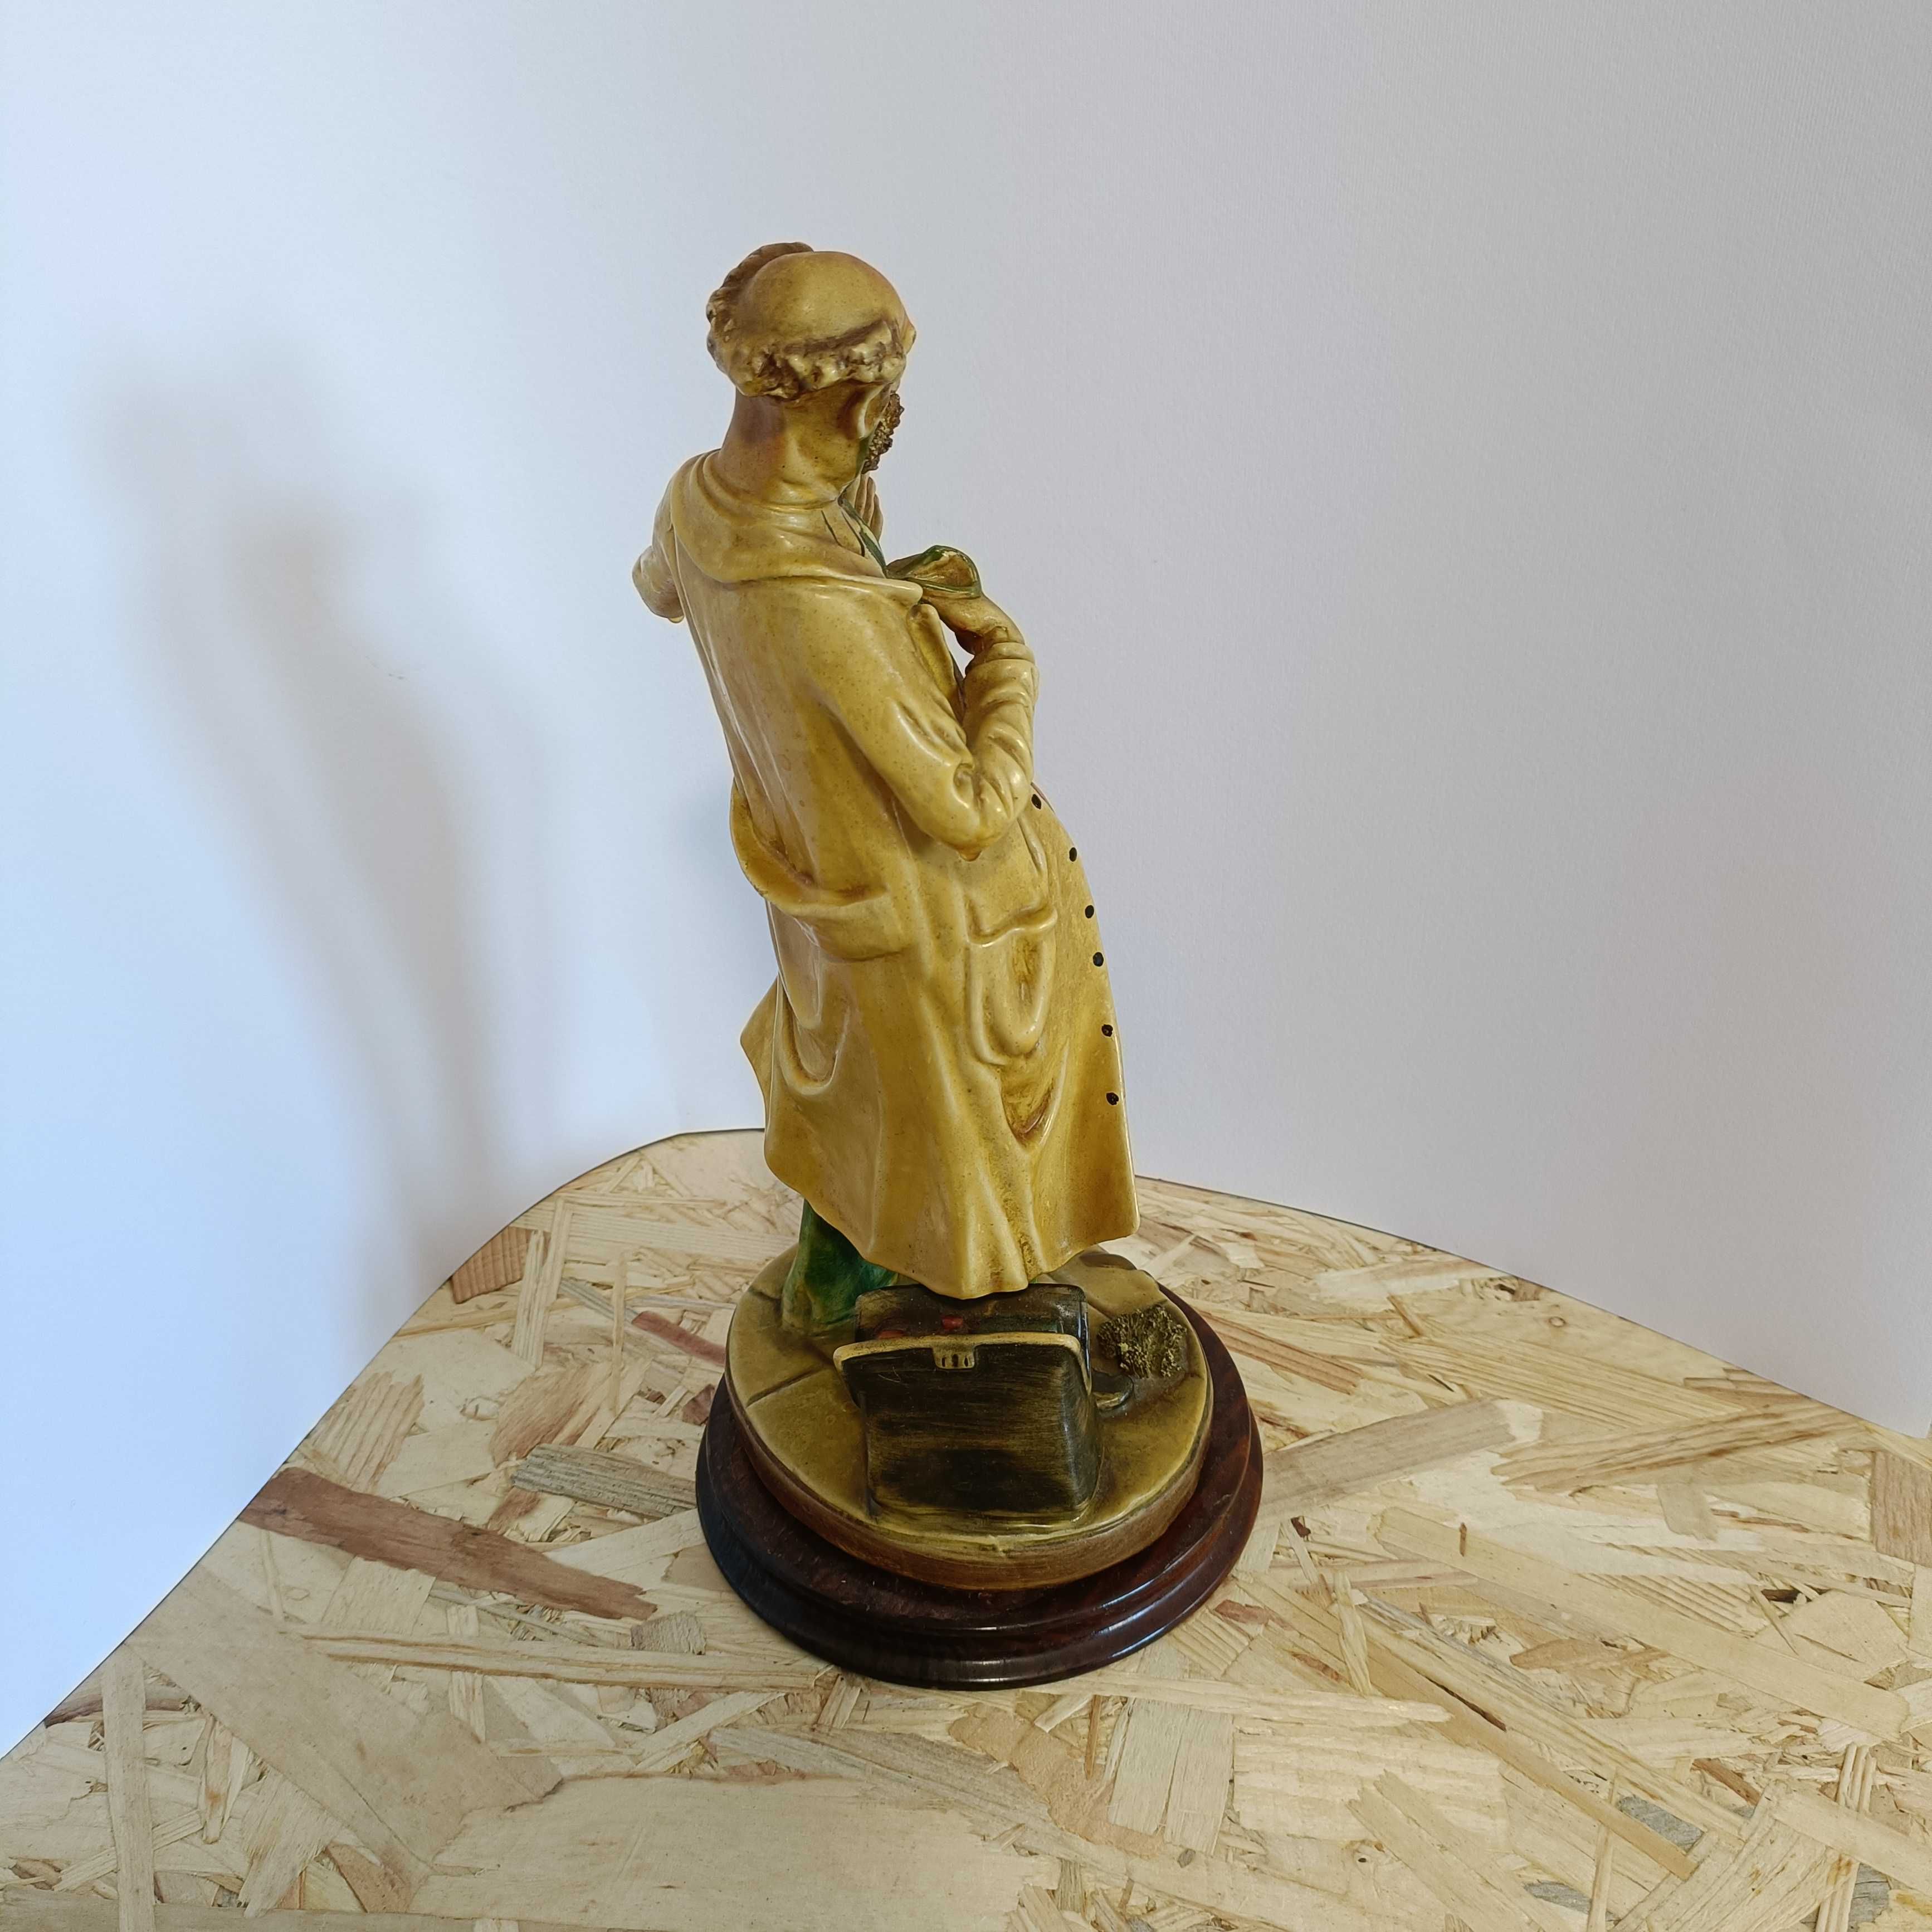 Boneco figura Homem, porcelana com base de madeira, mede 30 cm.